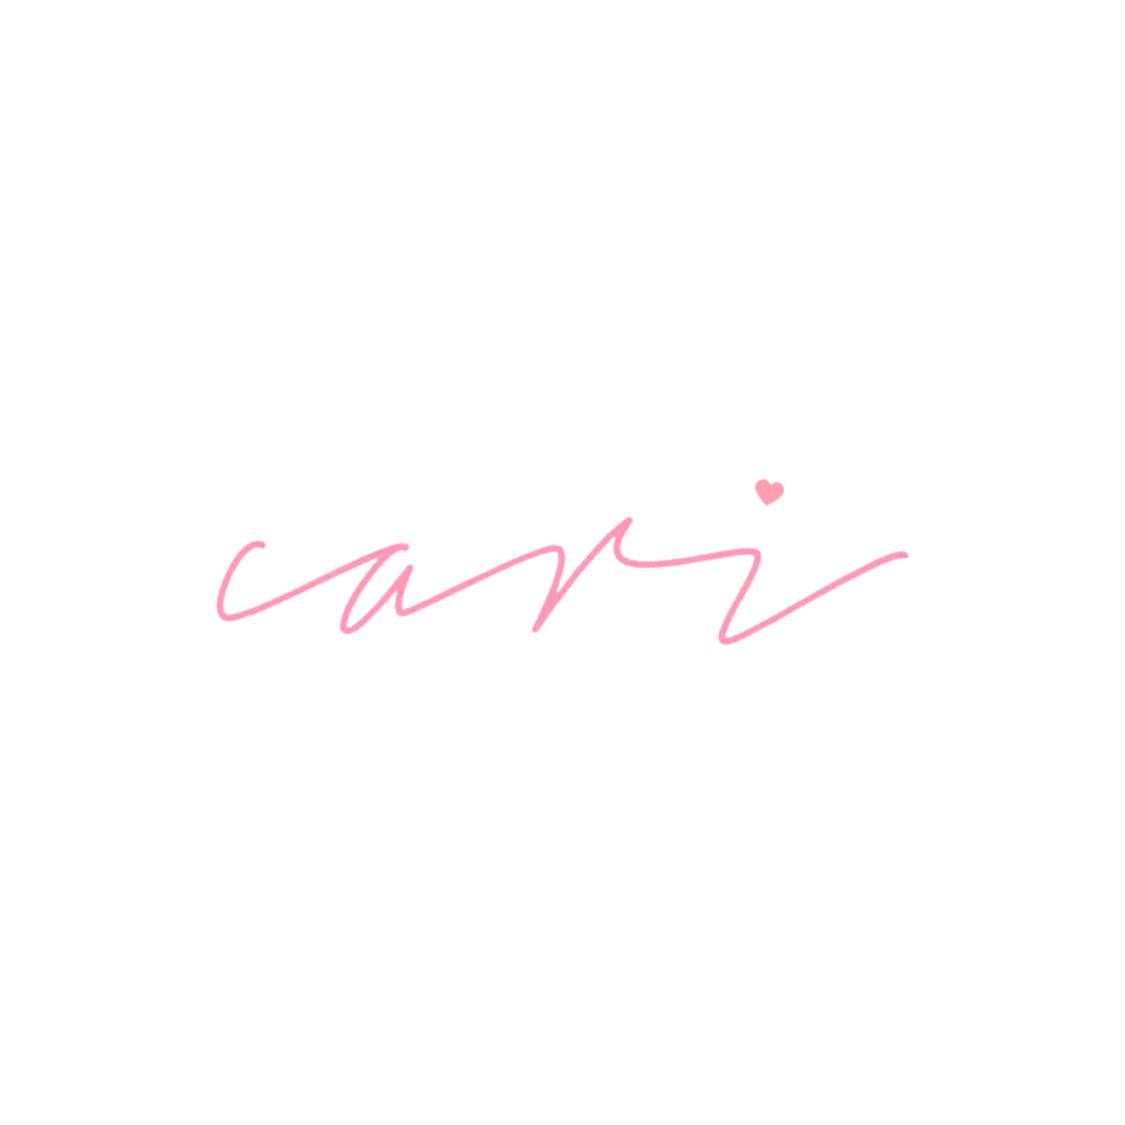 CARI 🎀's images